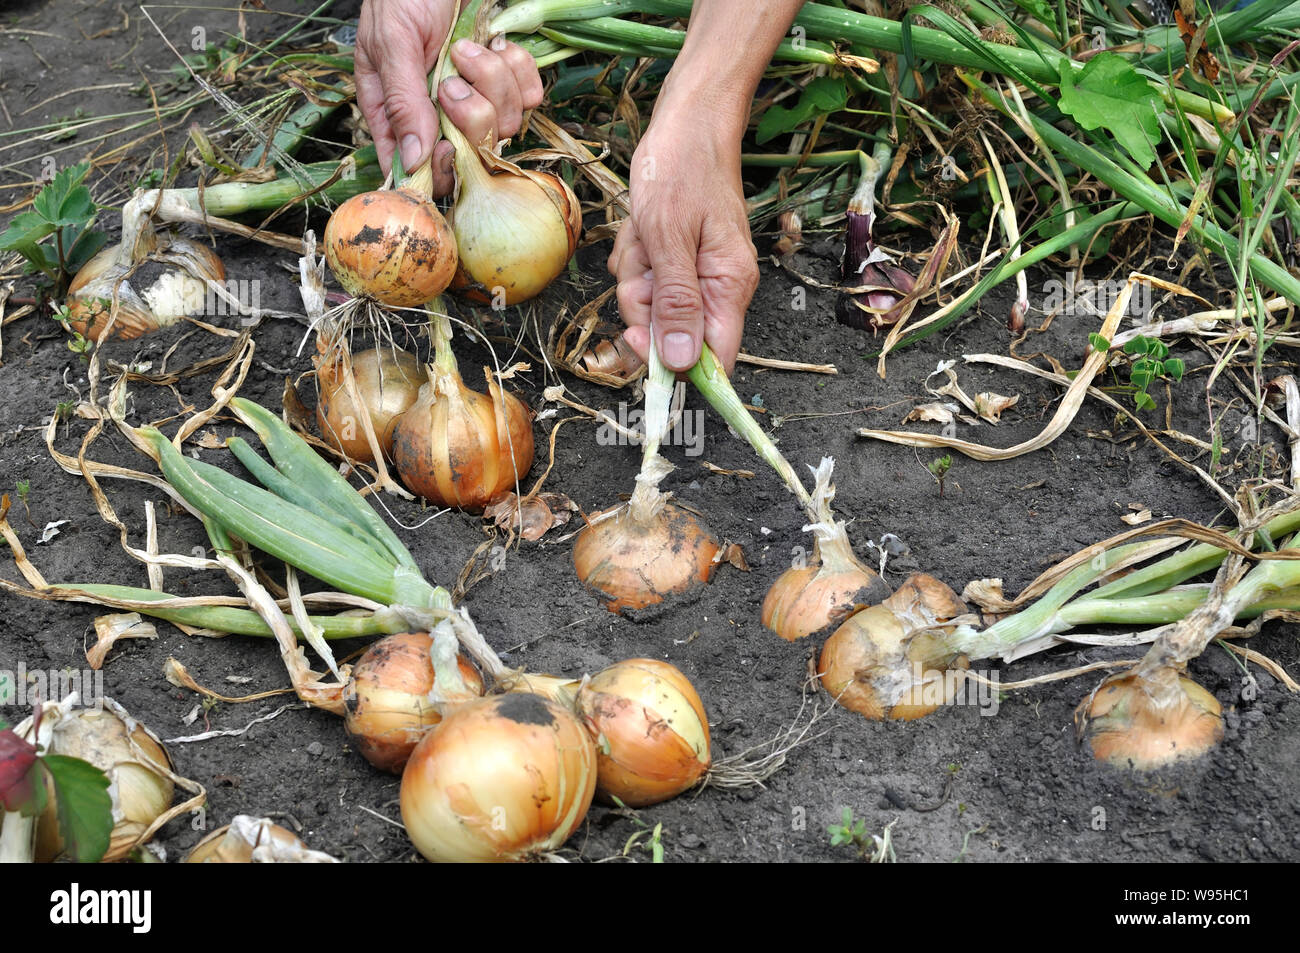 gardener's hands harvesting ripe organic onion in the vegetable garden Stock Photo